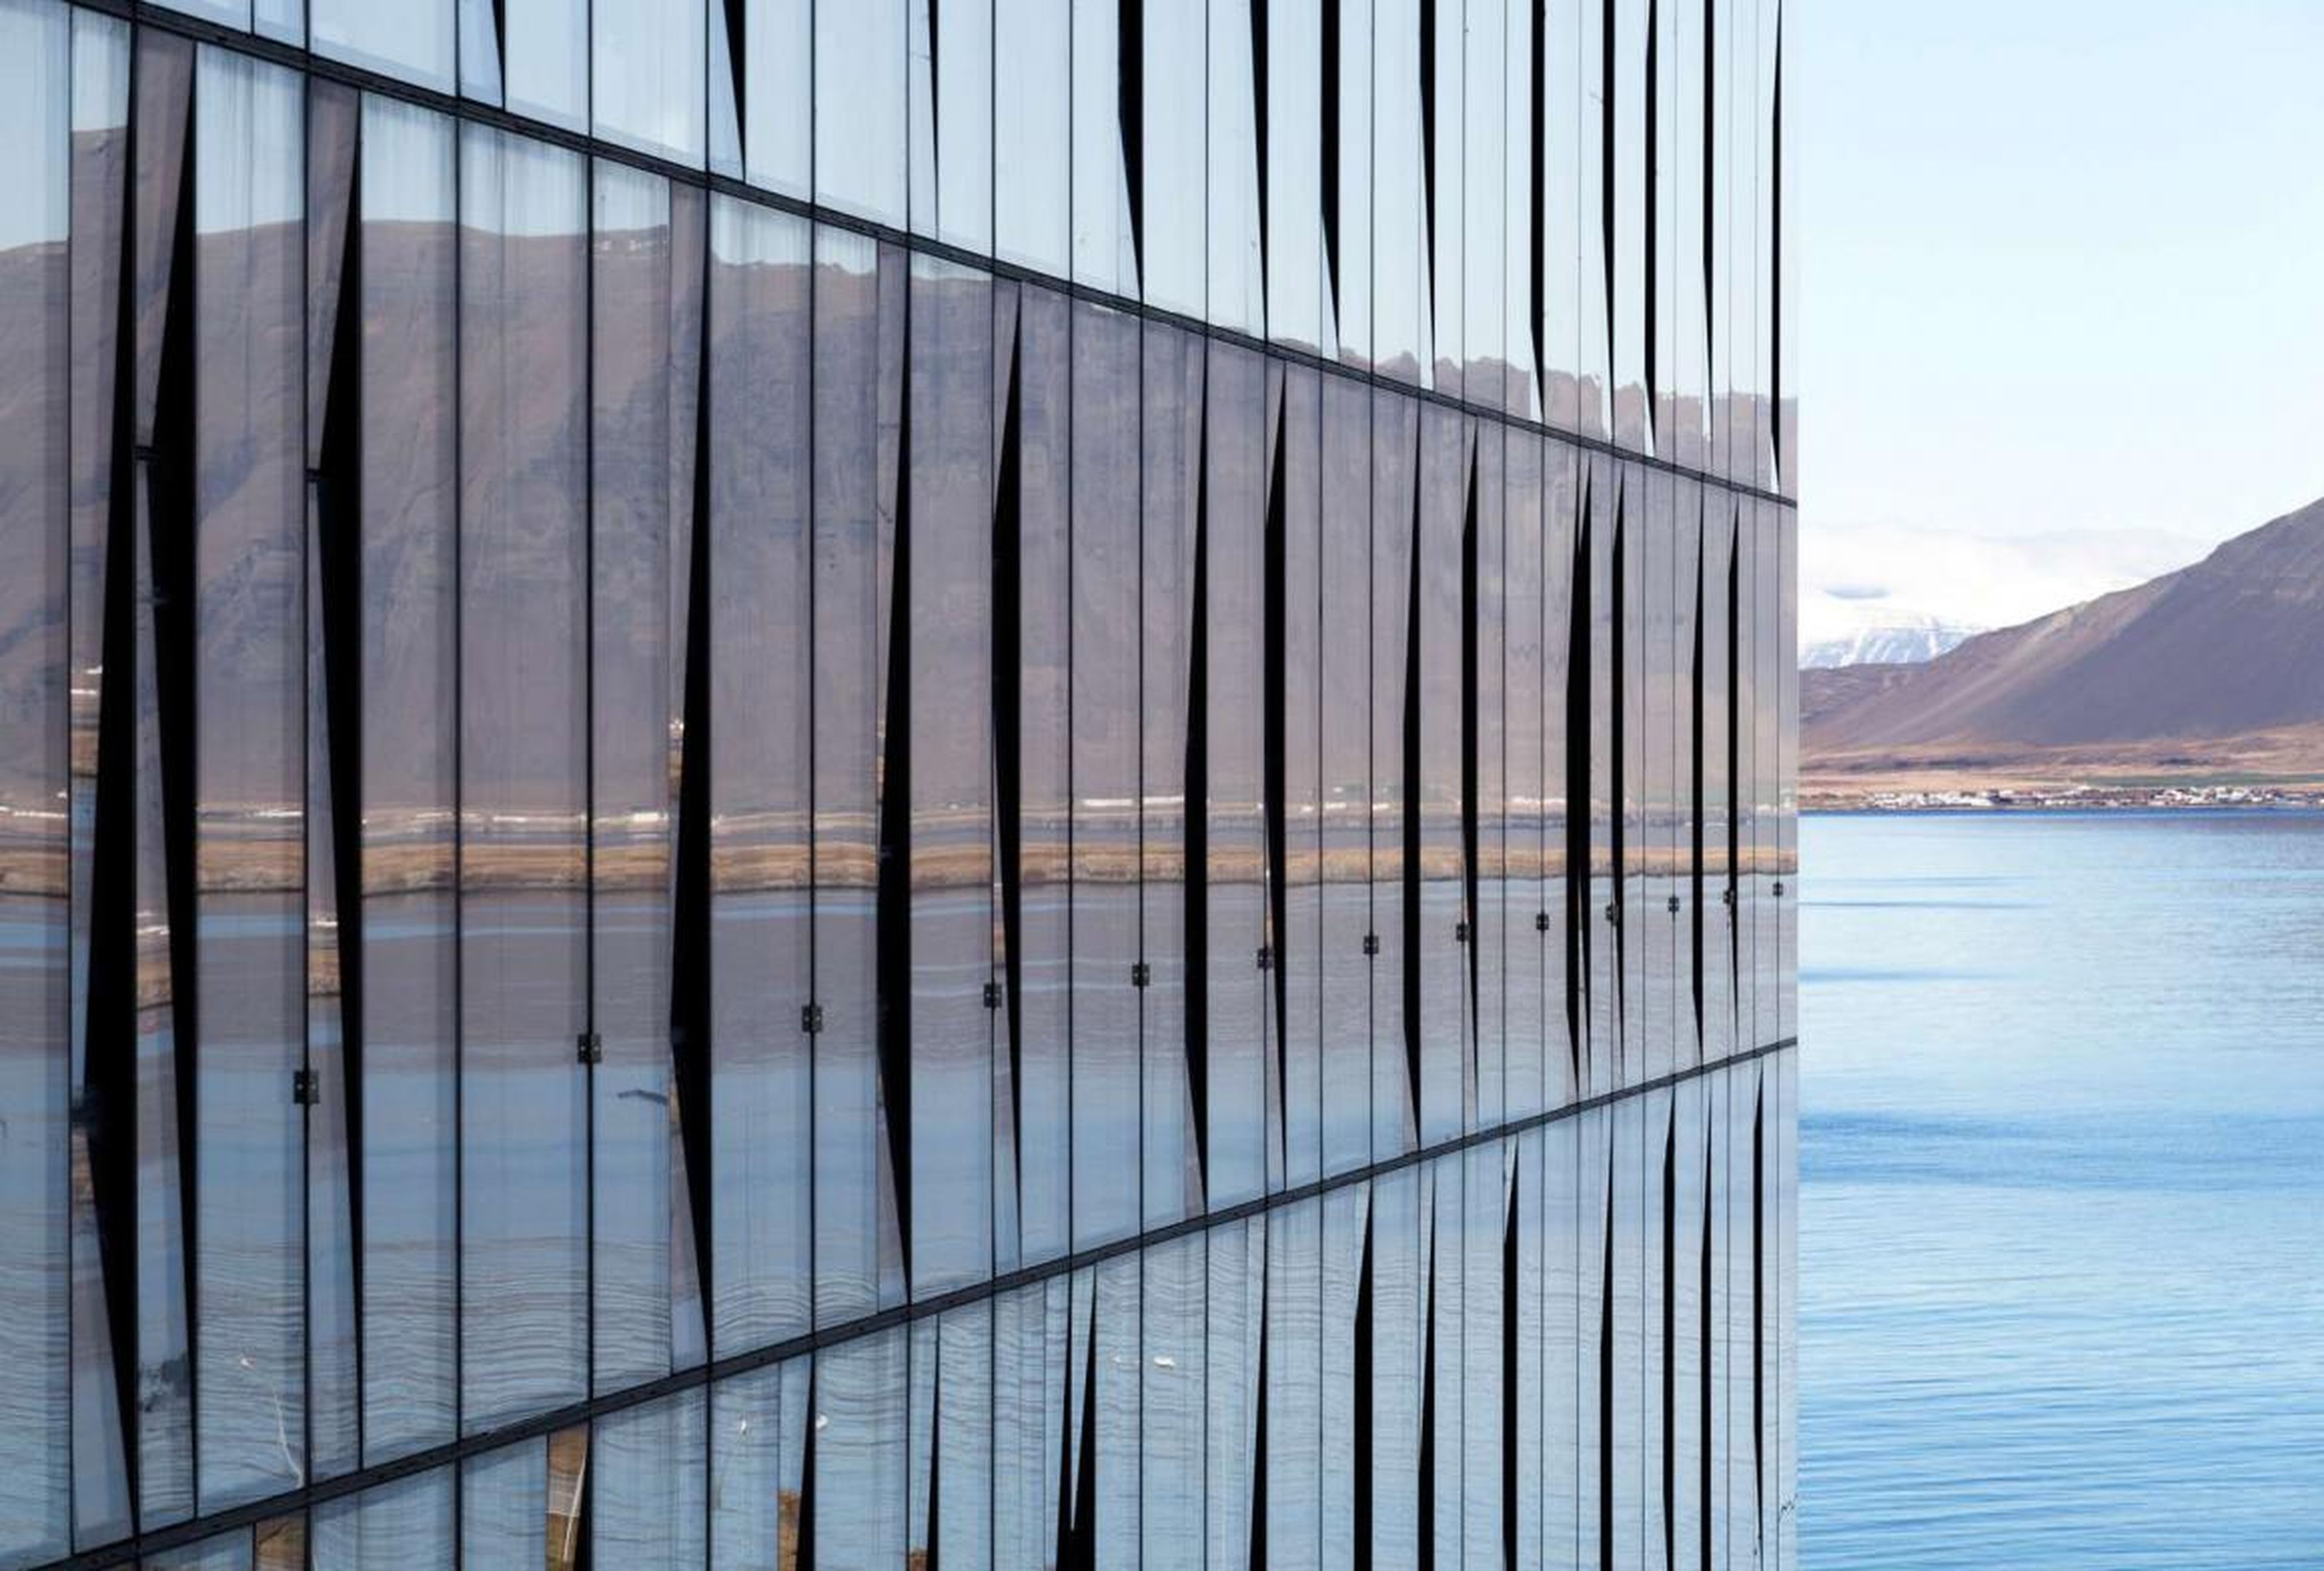 Algunos de los edificios más bellos se integran con su paisaje. El edificio Turninn en Reikiavik refleja la belleza salvaje de Islandia.